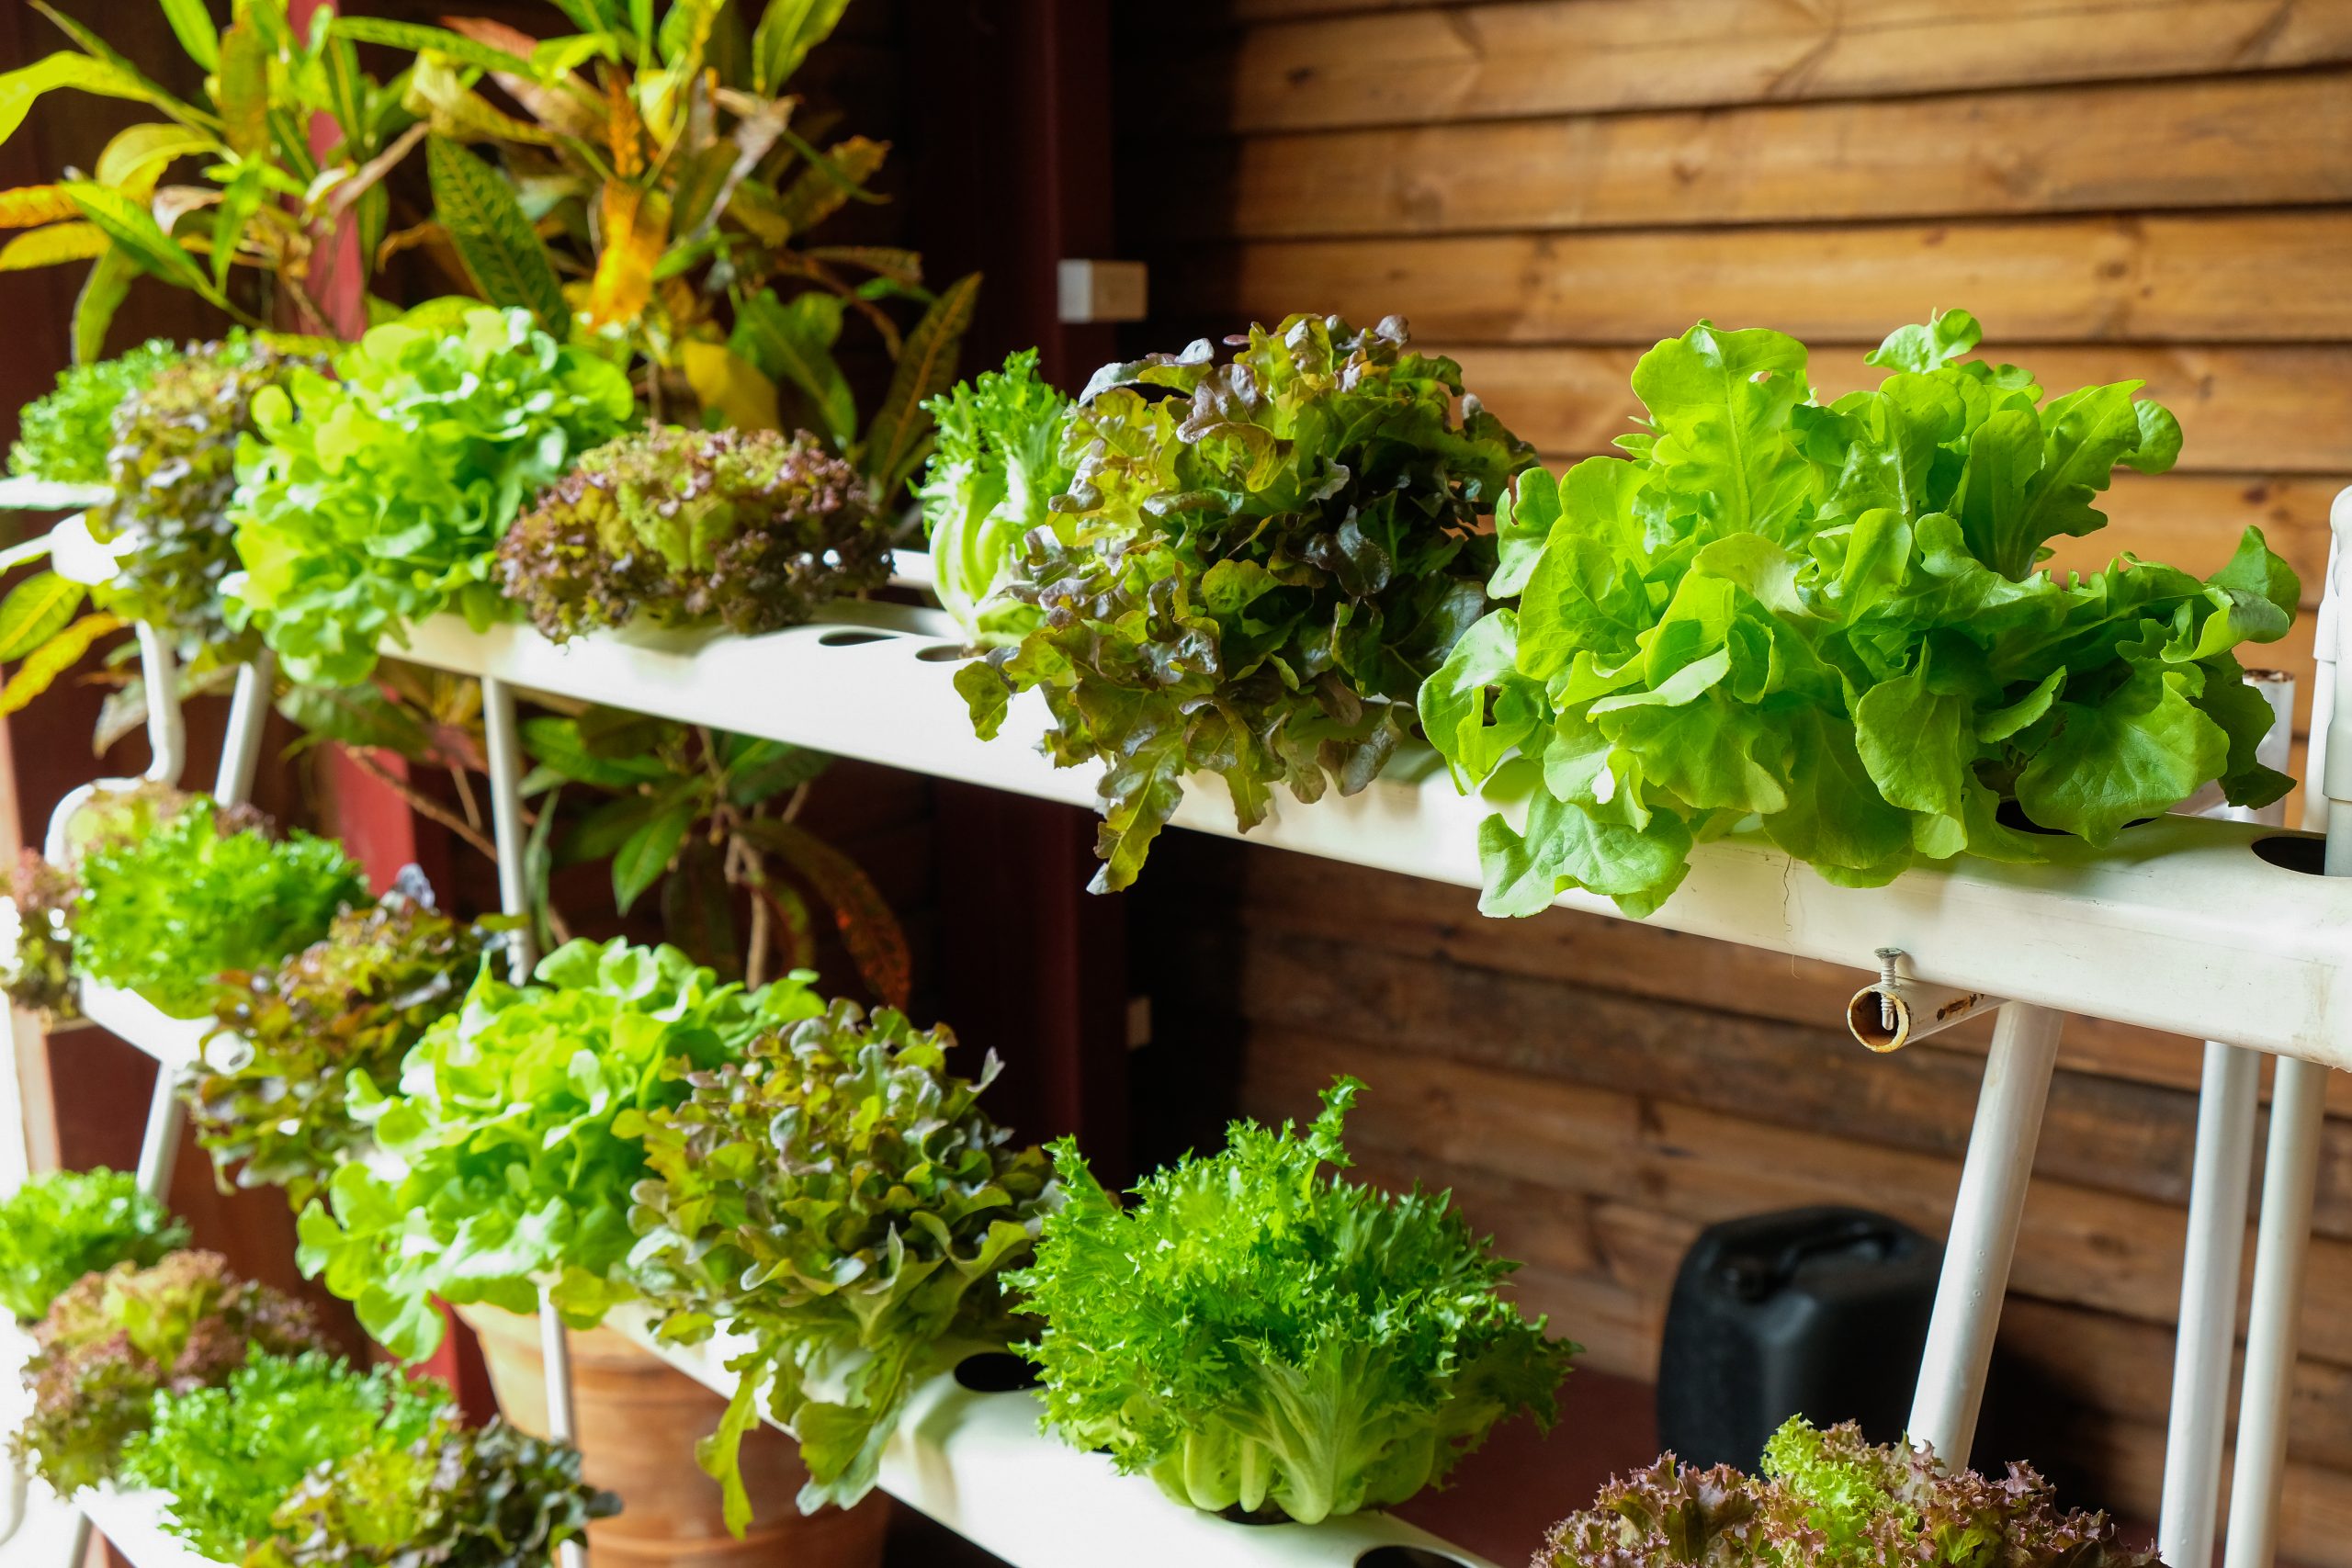 space-efficient hydroponics